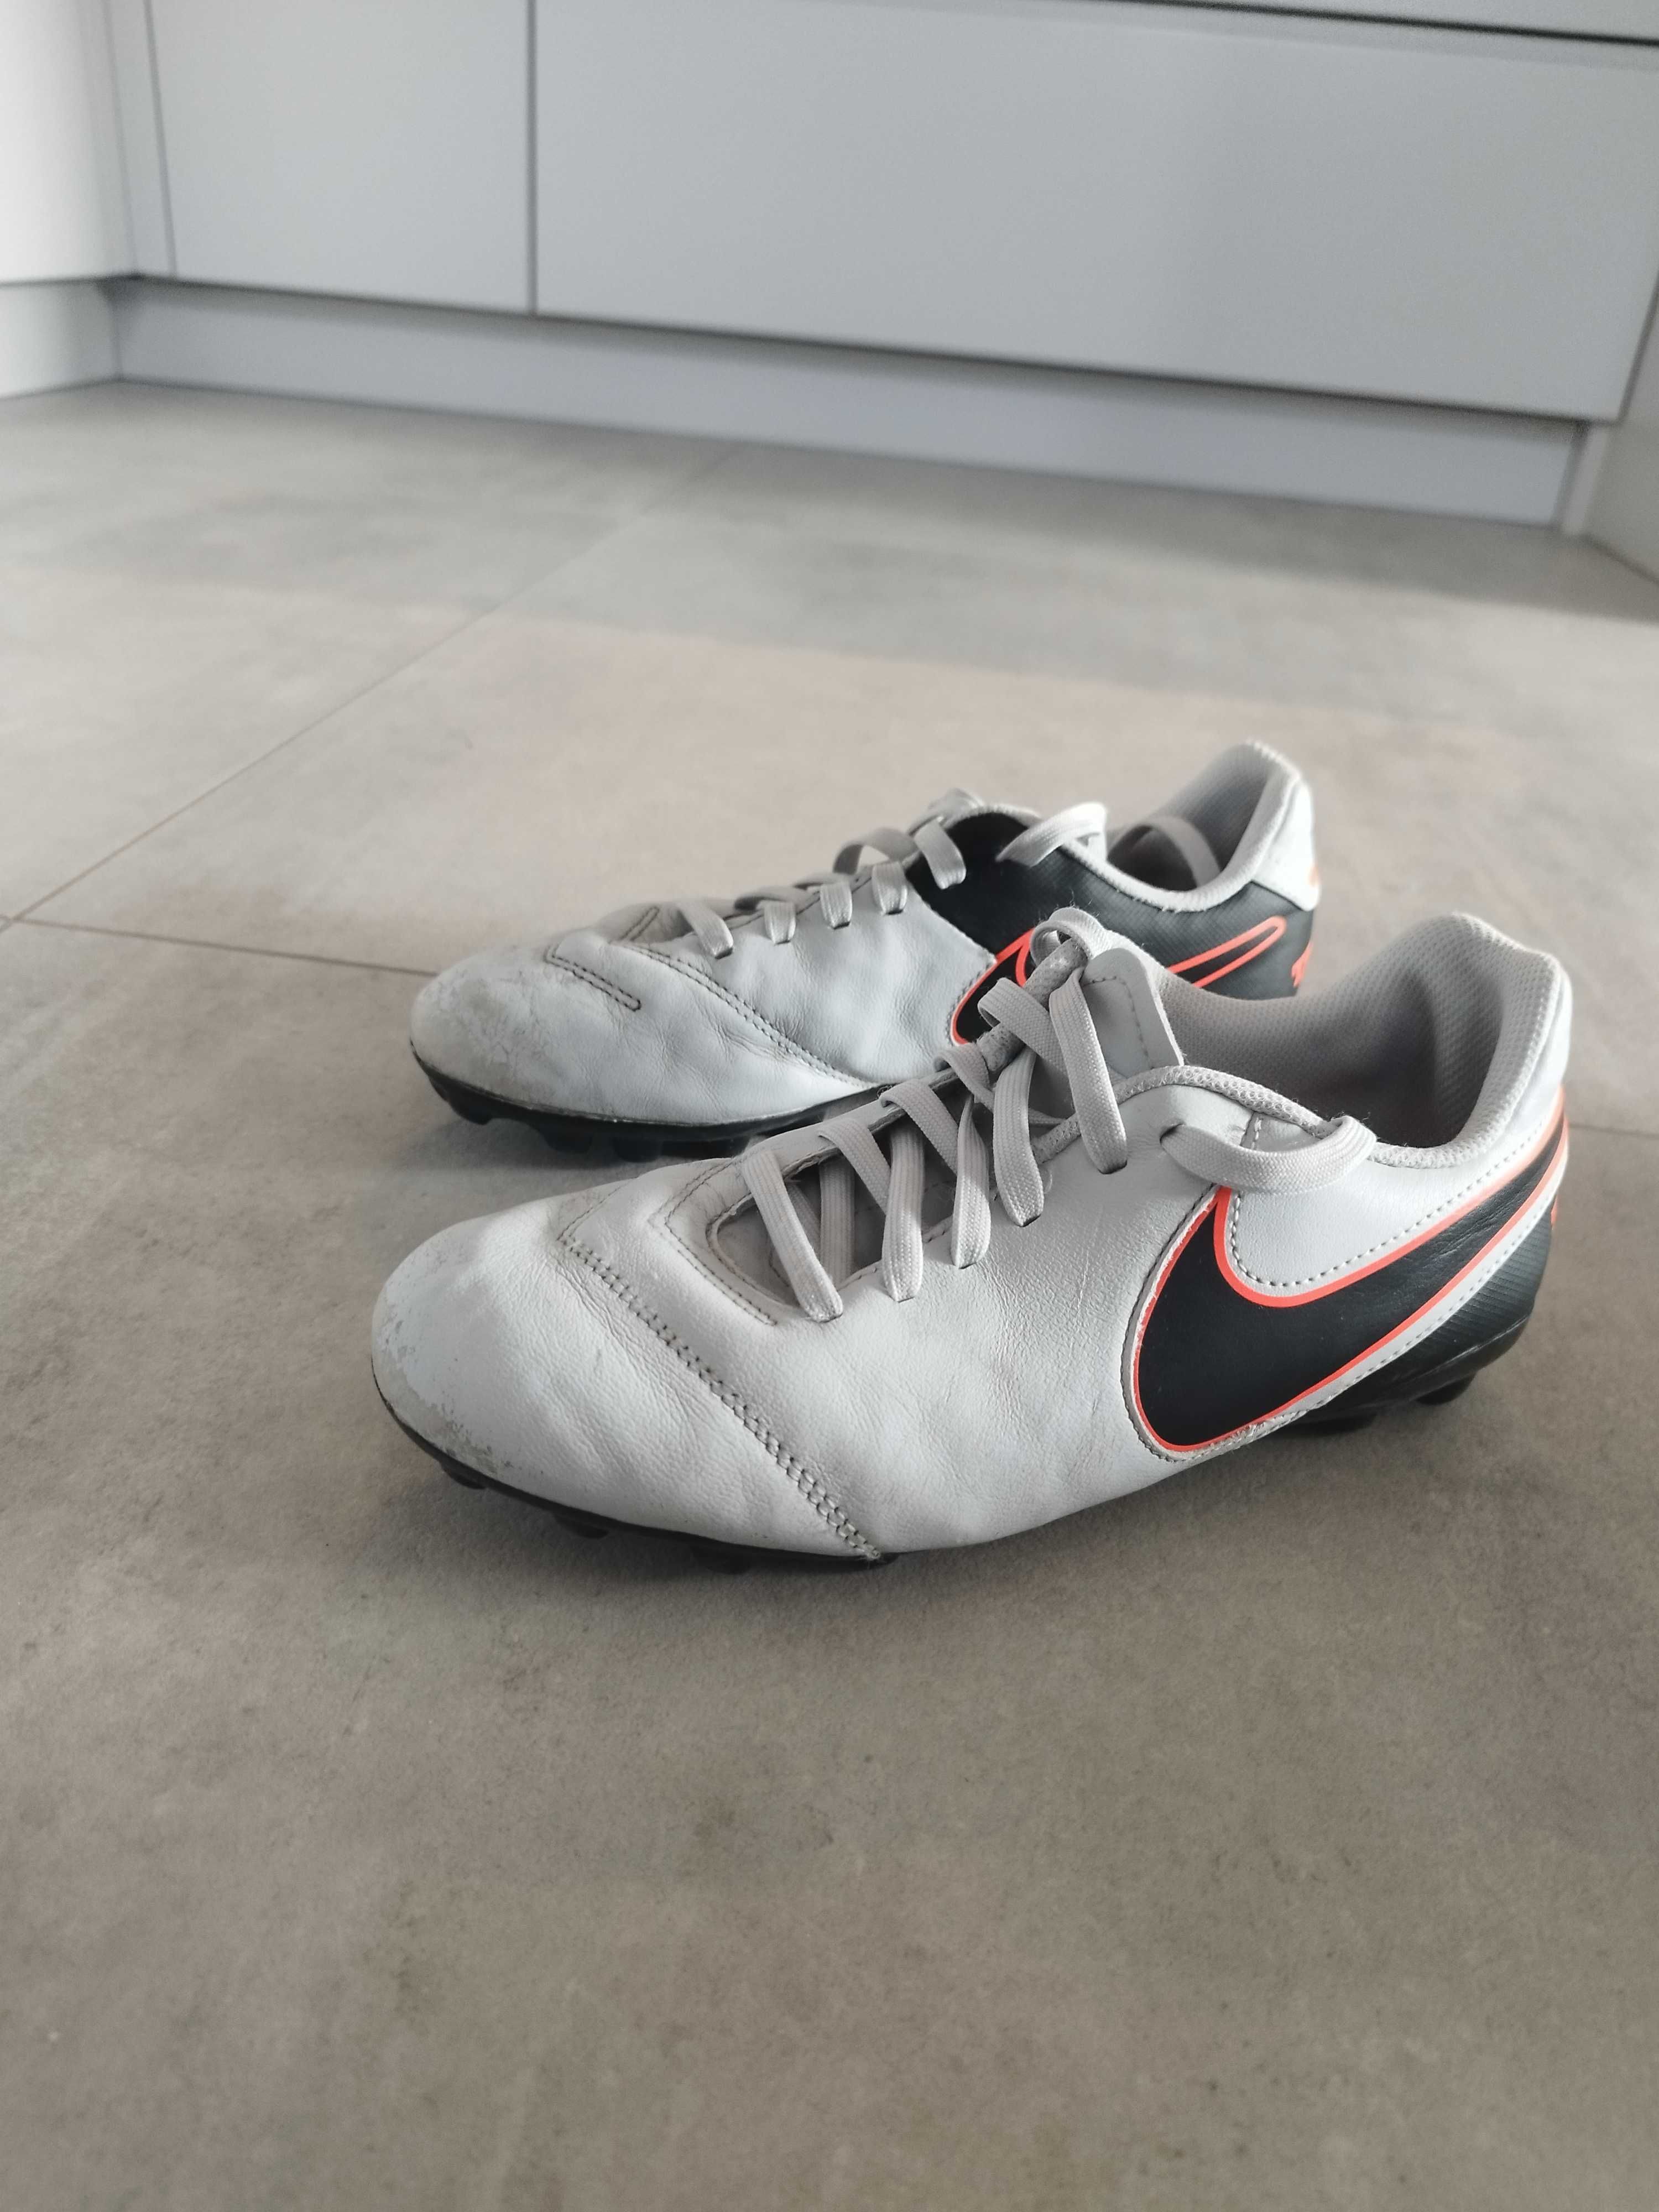 Chłopięce buty piłkarskie Nike 36.5, 23.5 cm. Korki.